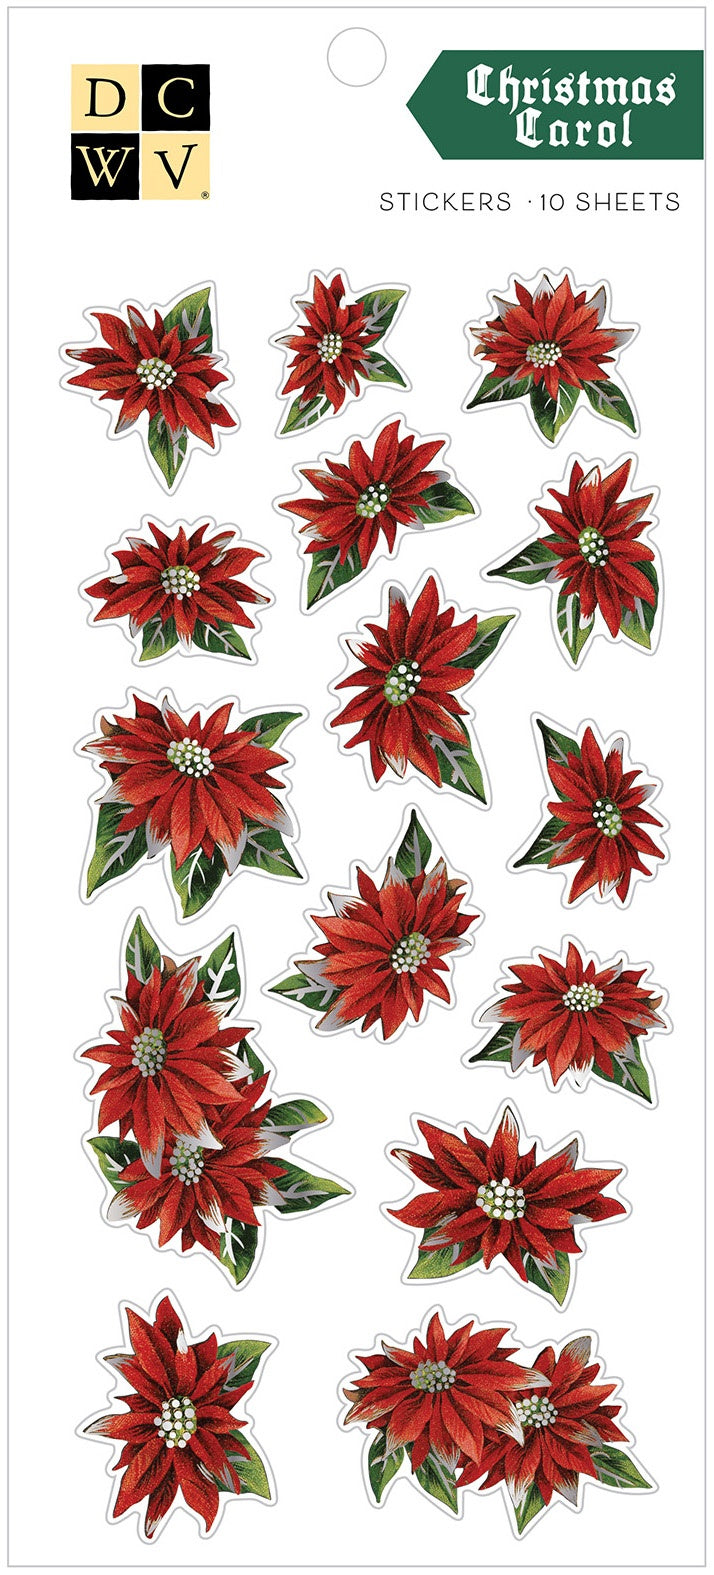 DCWV Christmas Stickers 10/Sheets-Christmas Carol, W/Silver Foil